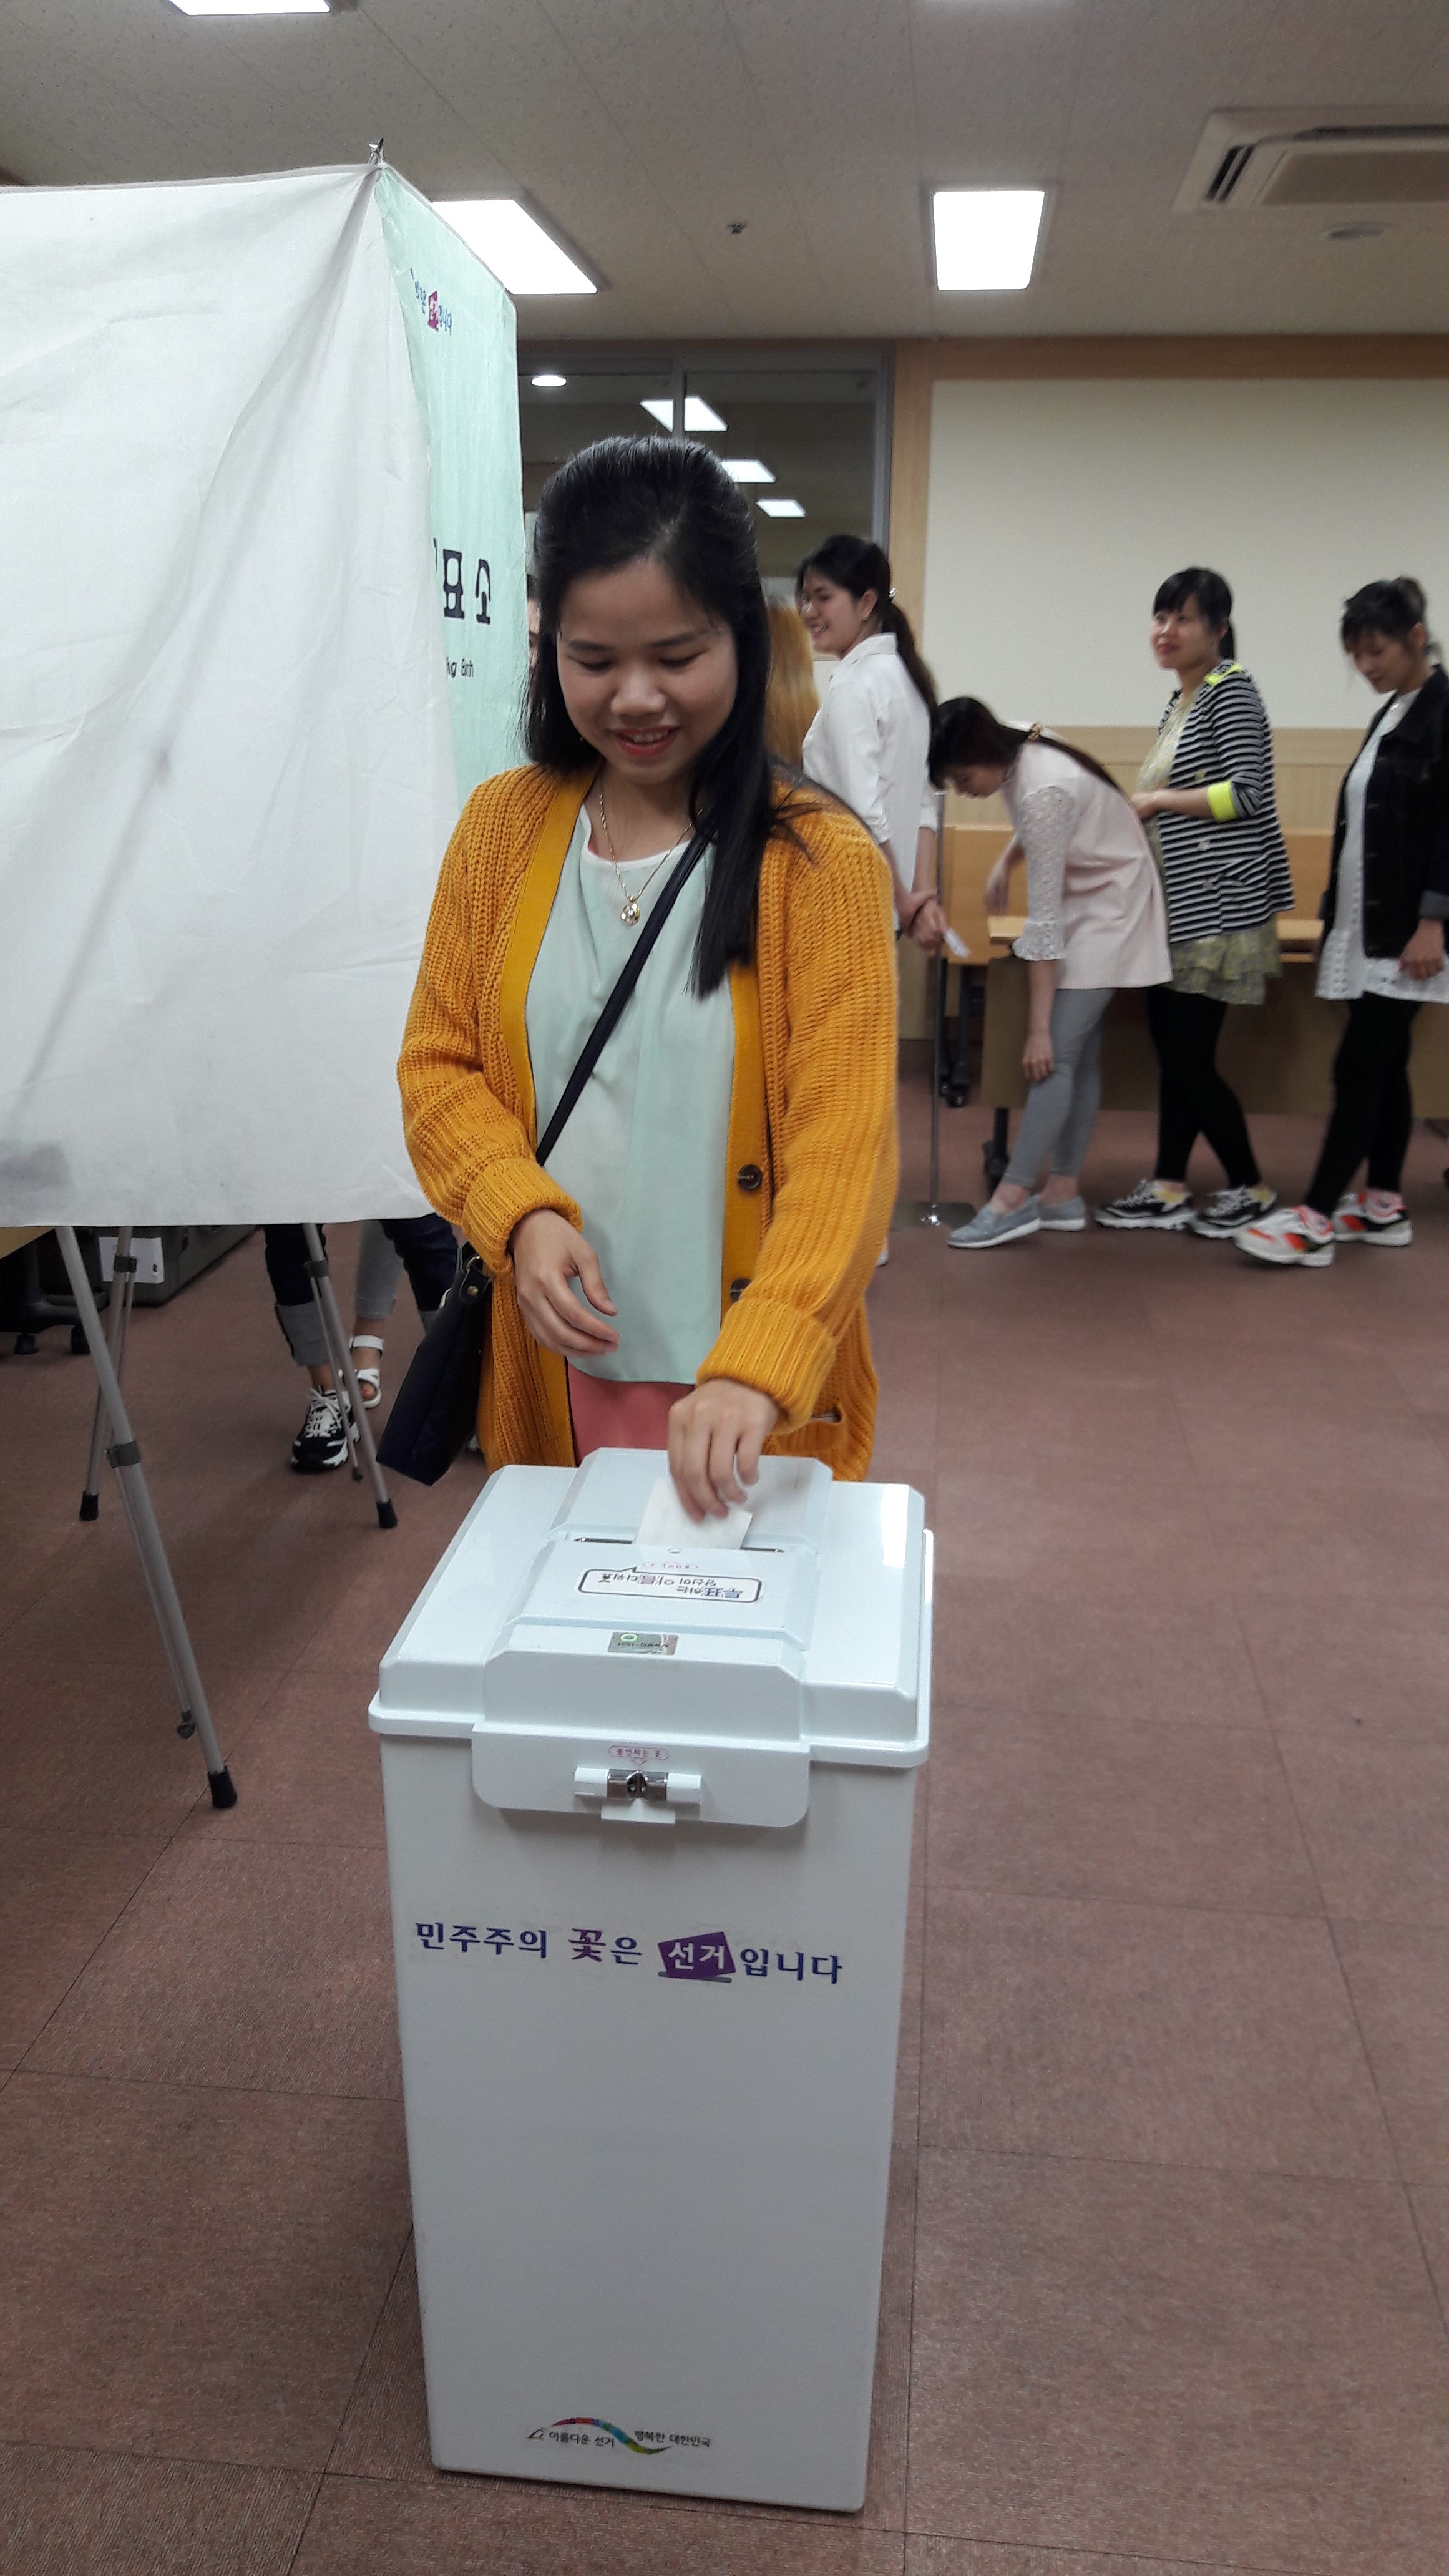 2017년 4월 27일 창원시성산구선관위직원이 창원시다문화가족지원센터에서 사전투표체험행사를 진행하는 모습.